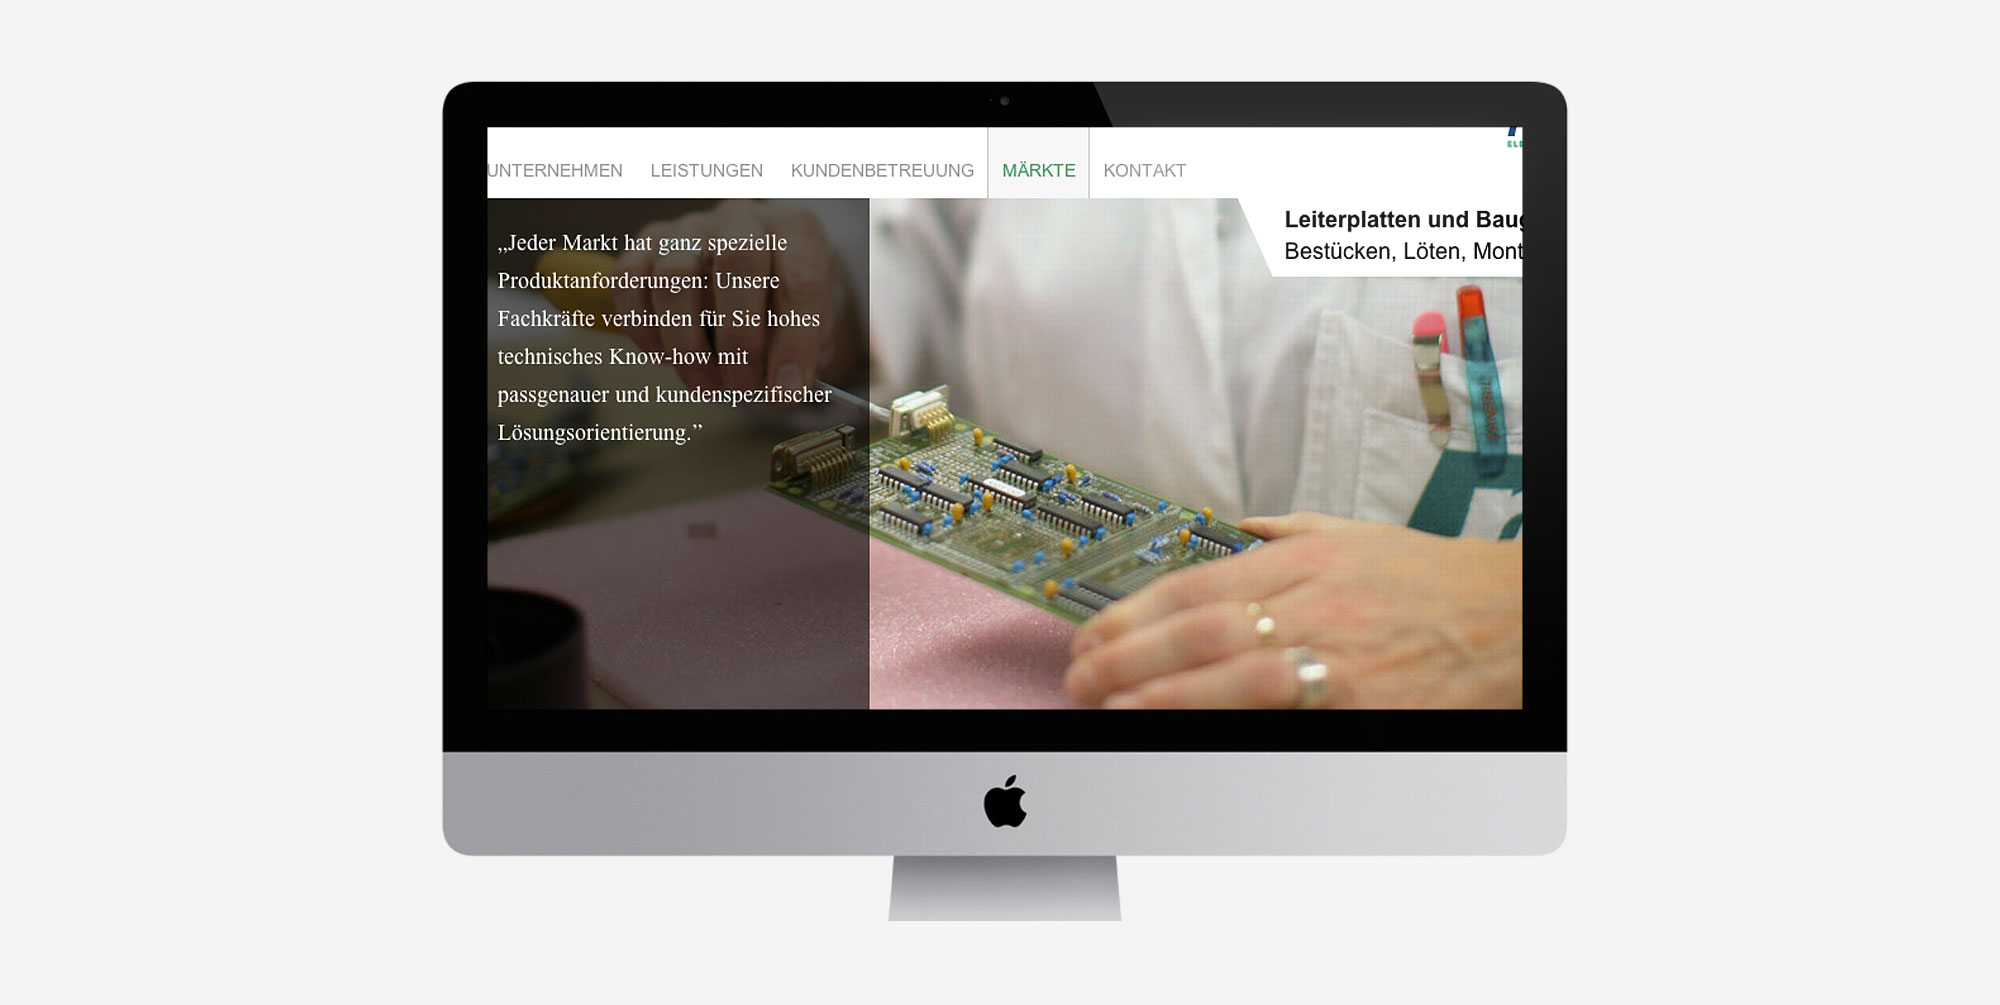 Für Rinklin Elektronik aus Neuffen entwickelte 75a die neue Website